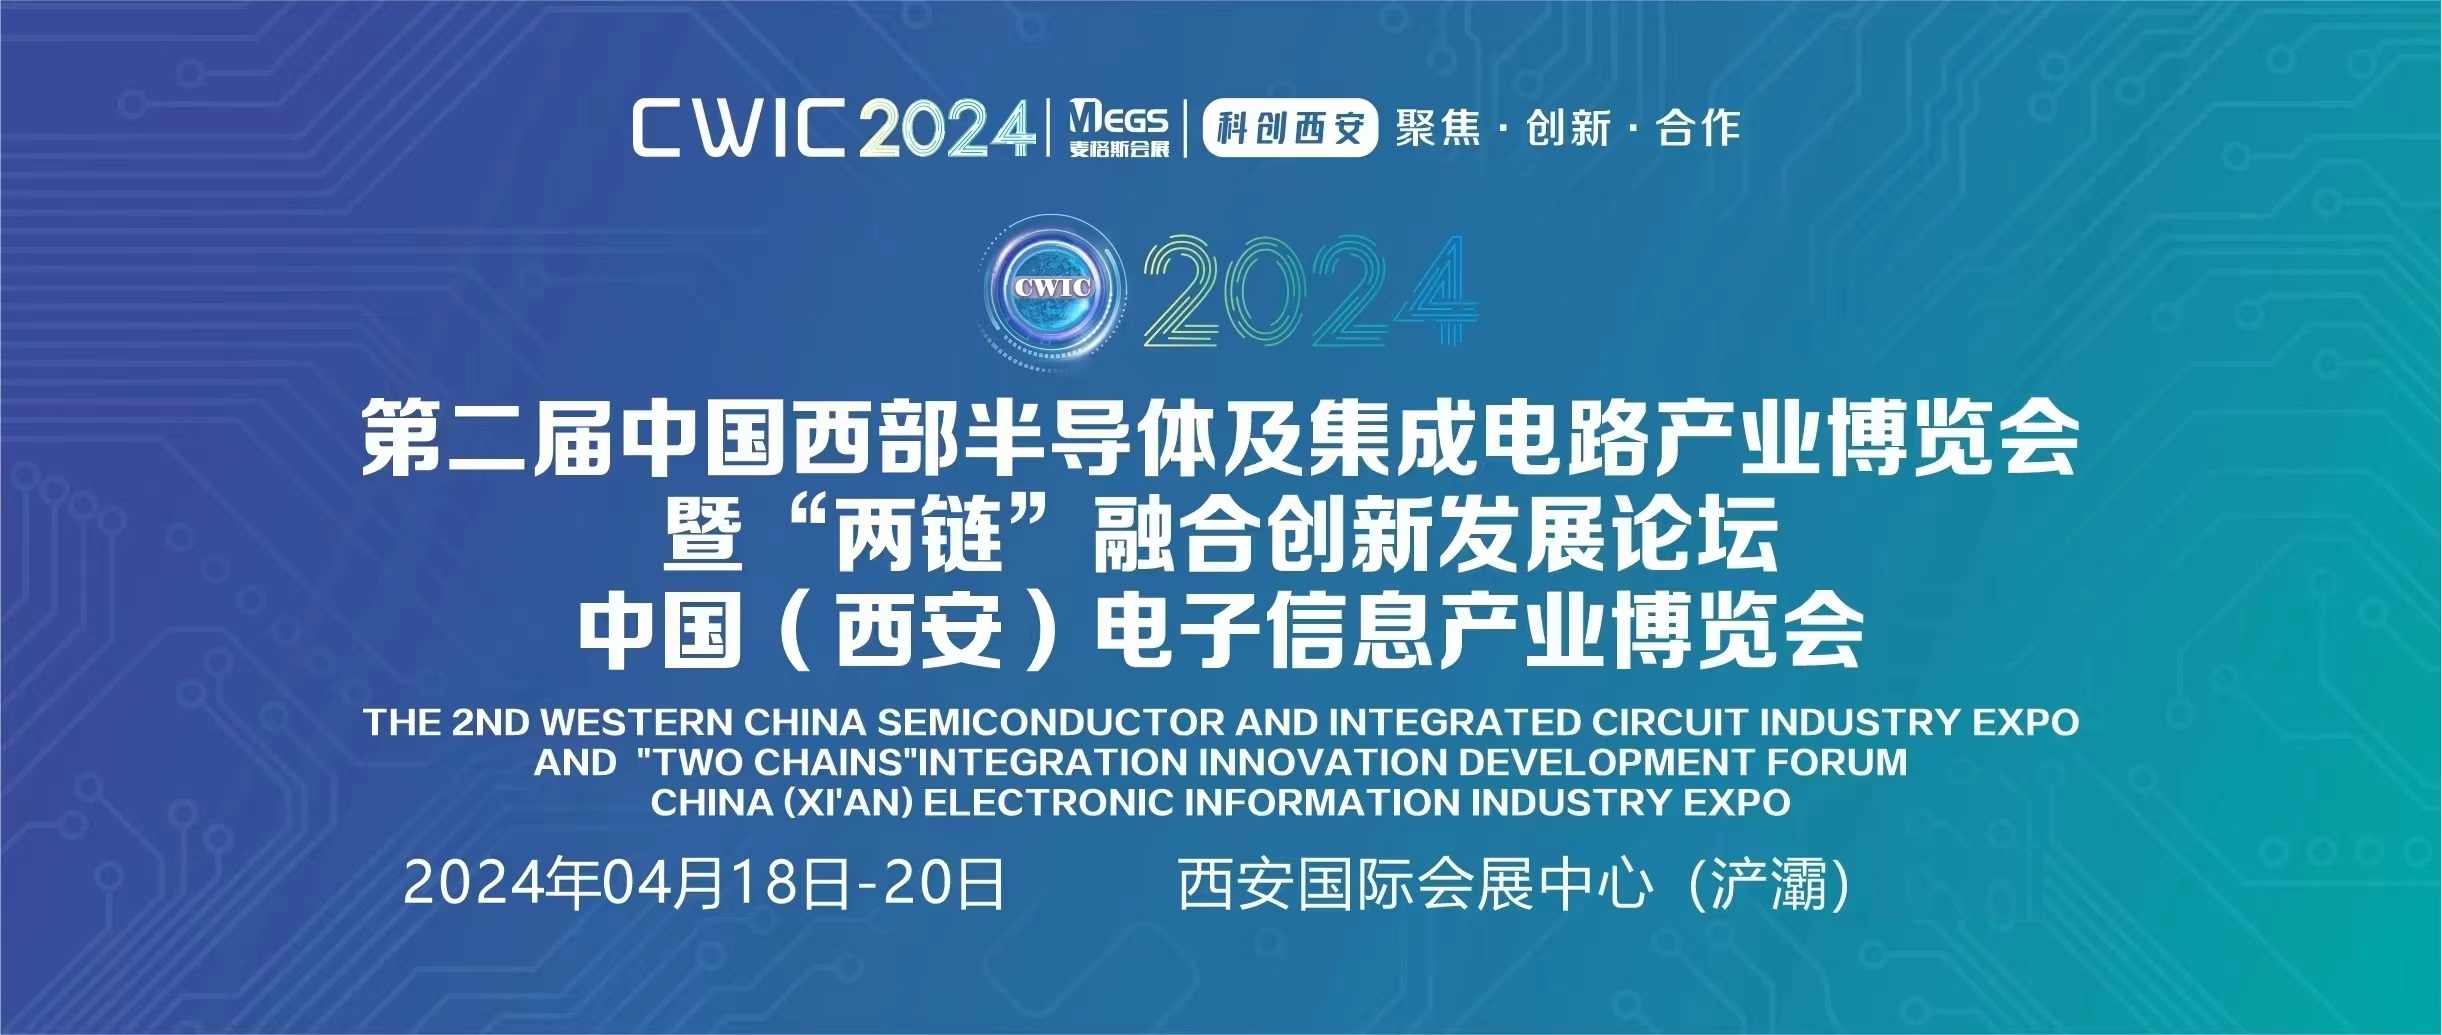 2024中国西部半导体及集成电路产业博览会暨‘两链’融合创新发展论坛、中国（西安）电子信息产业博览会